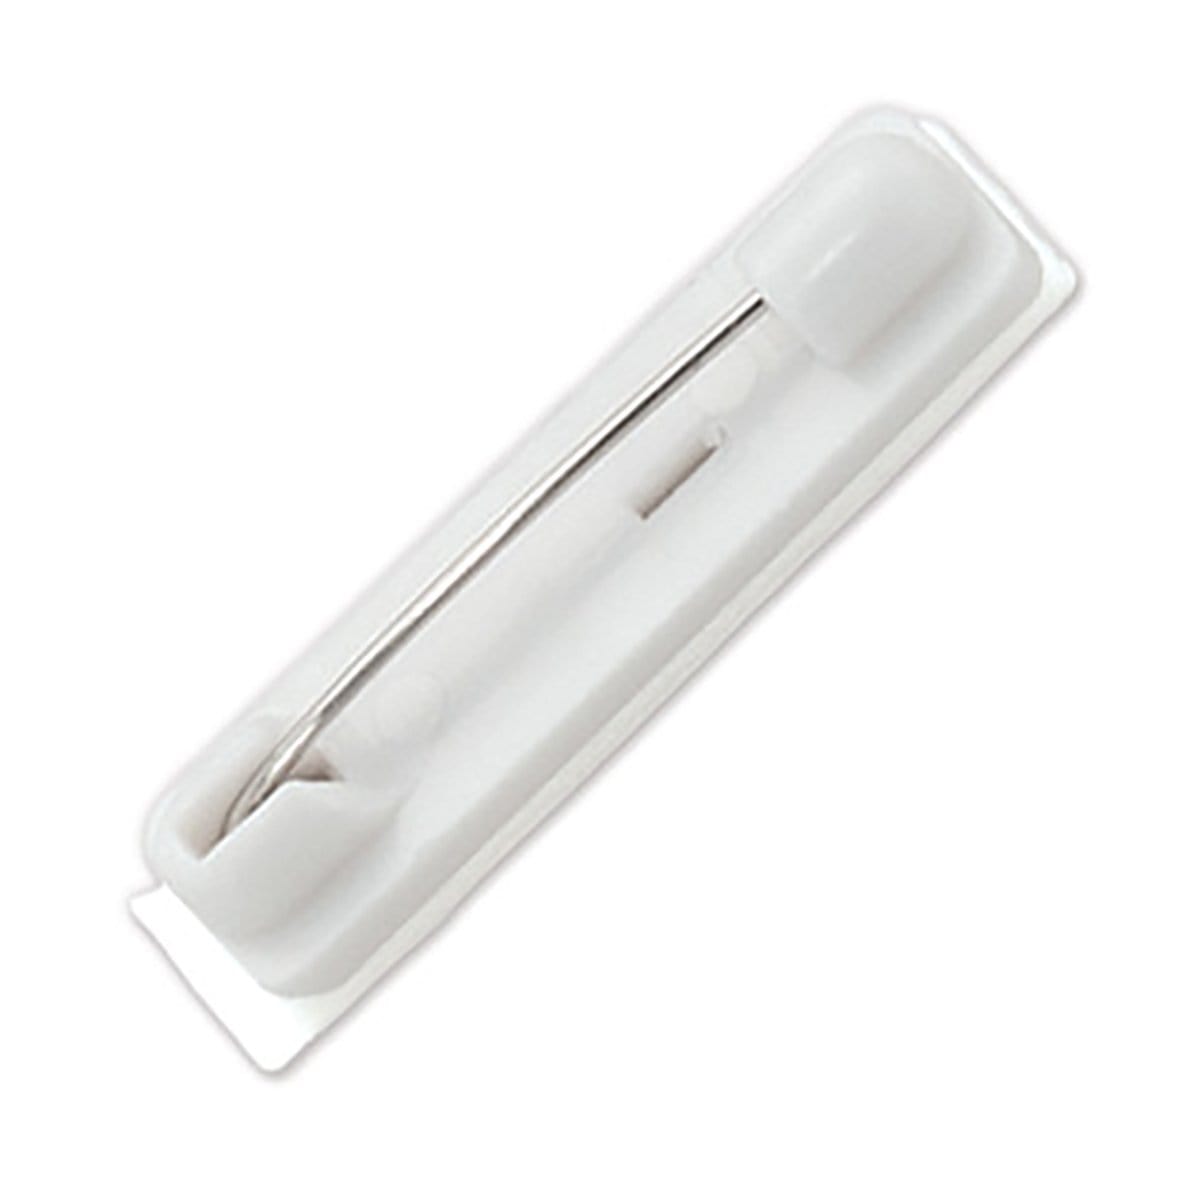 Pressure-Sensitive Plastic Bar Pin, 1 1/4" (32Mm) 6920-3605 